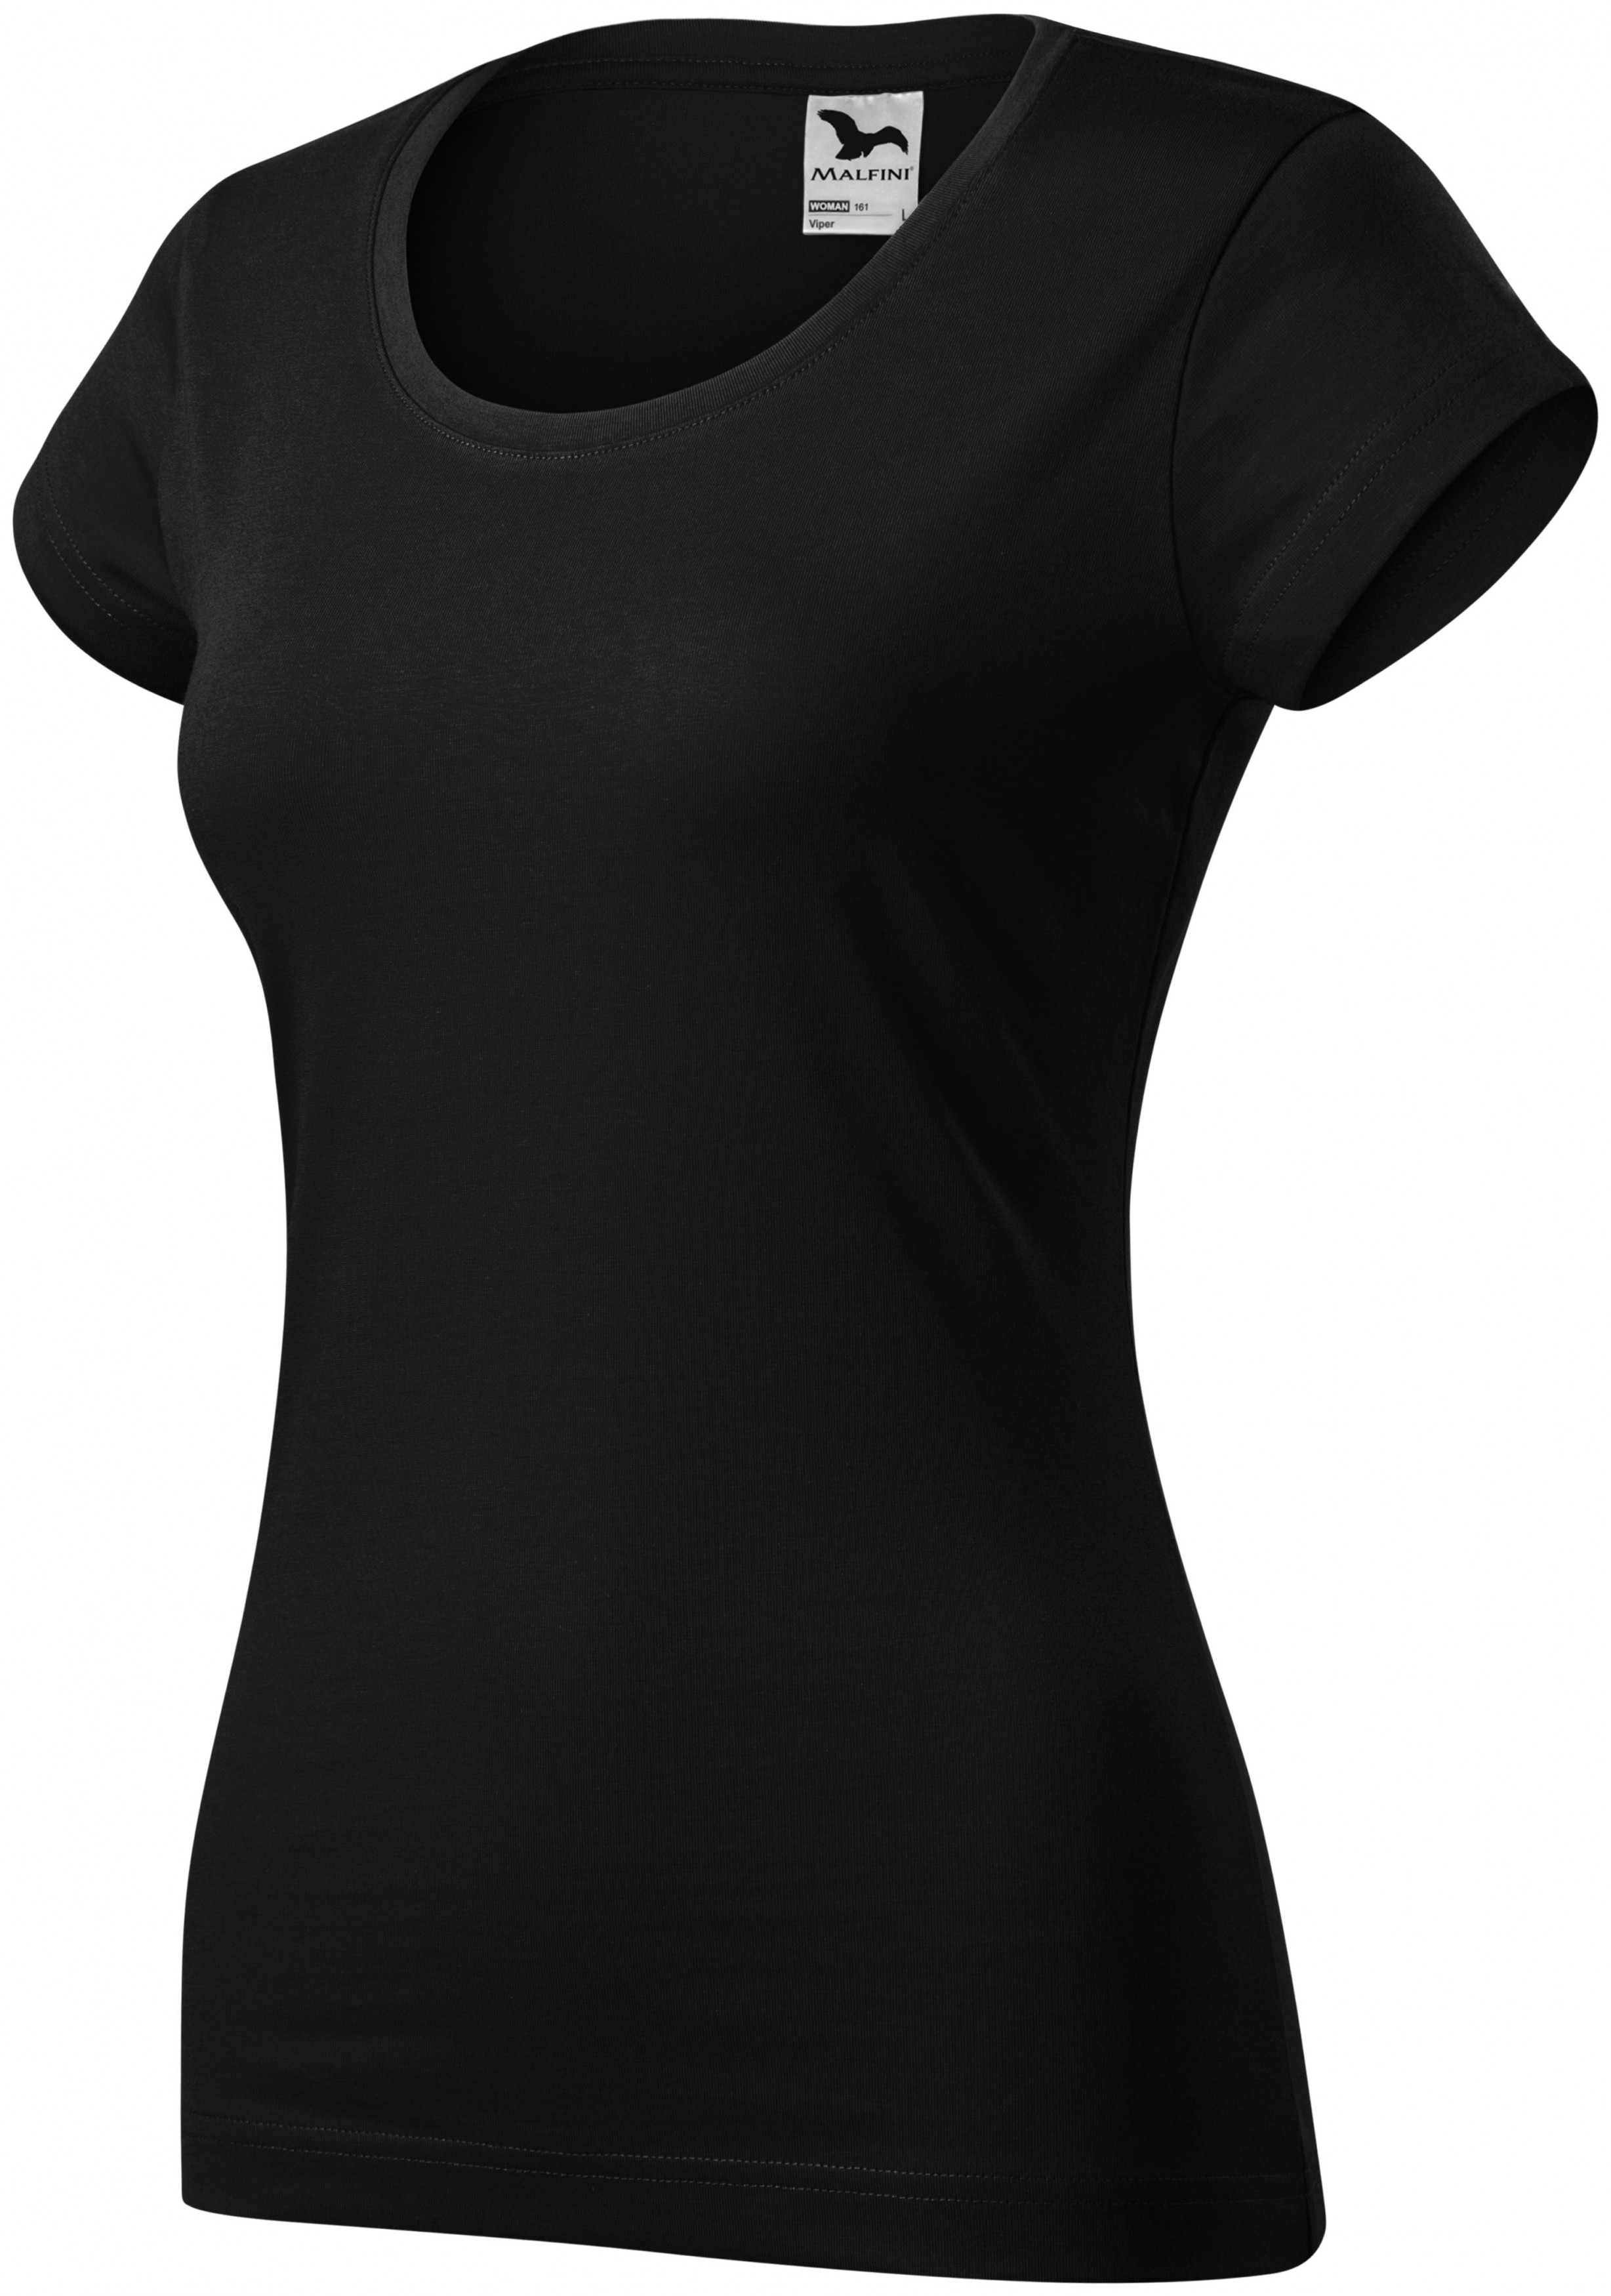 Dámske tričko zúžené s okrúhlym výstrihom, čierna, 2XL